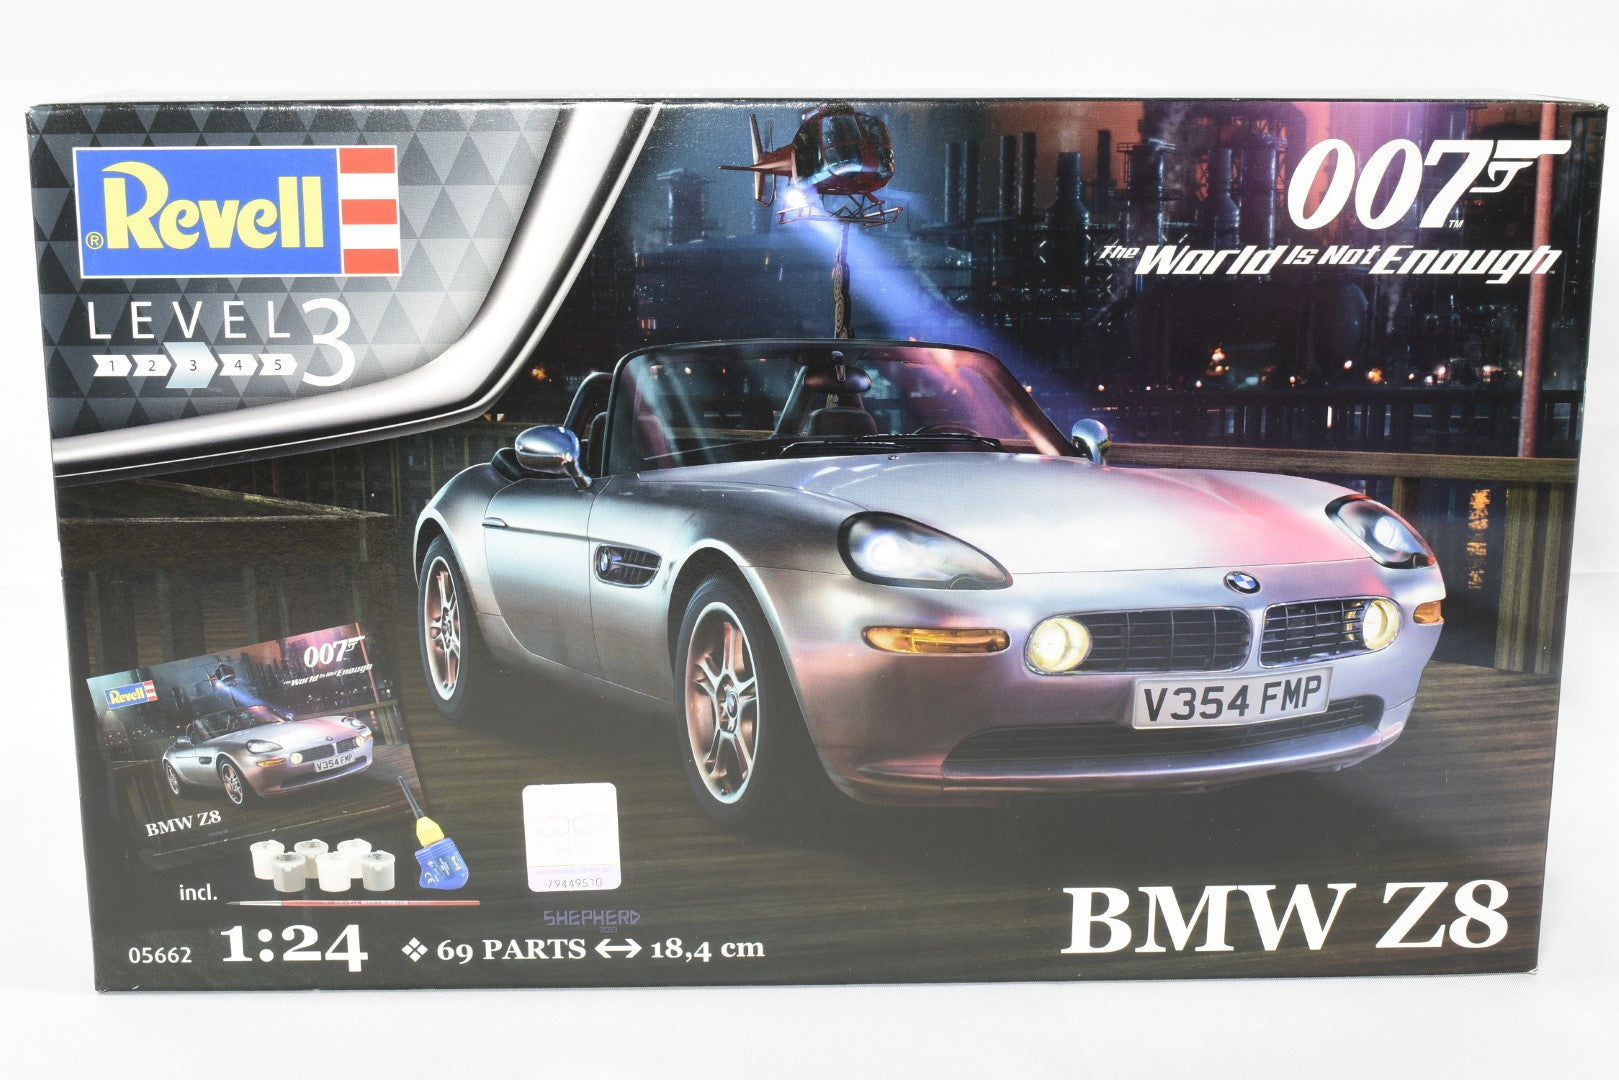 Maquette BMW Z8 James Bond 007 1/24 Revell : King Jouet, Maquettes